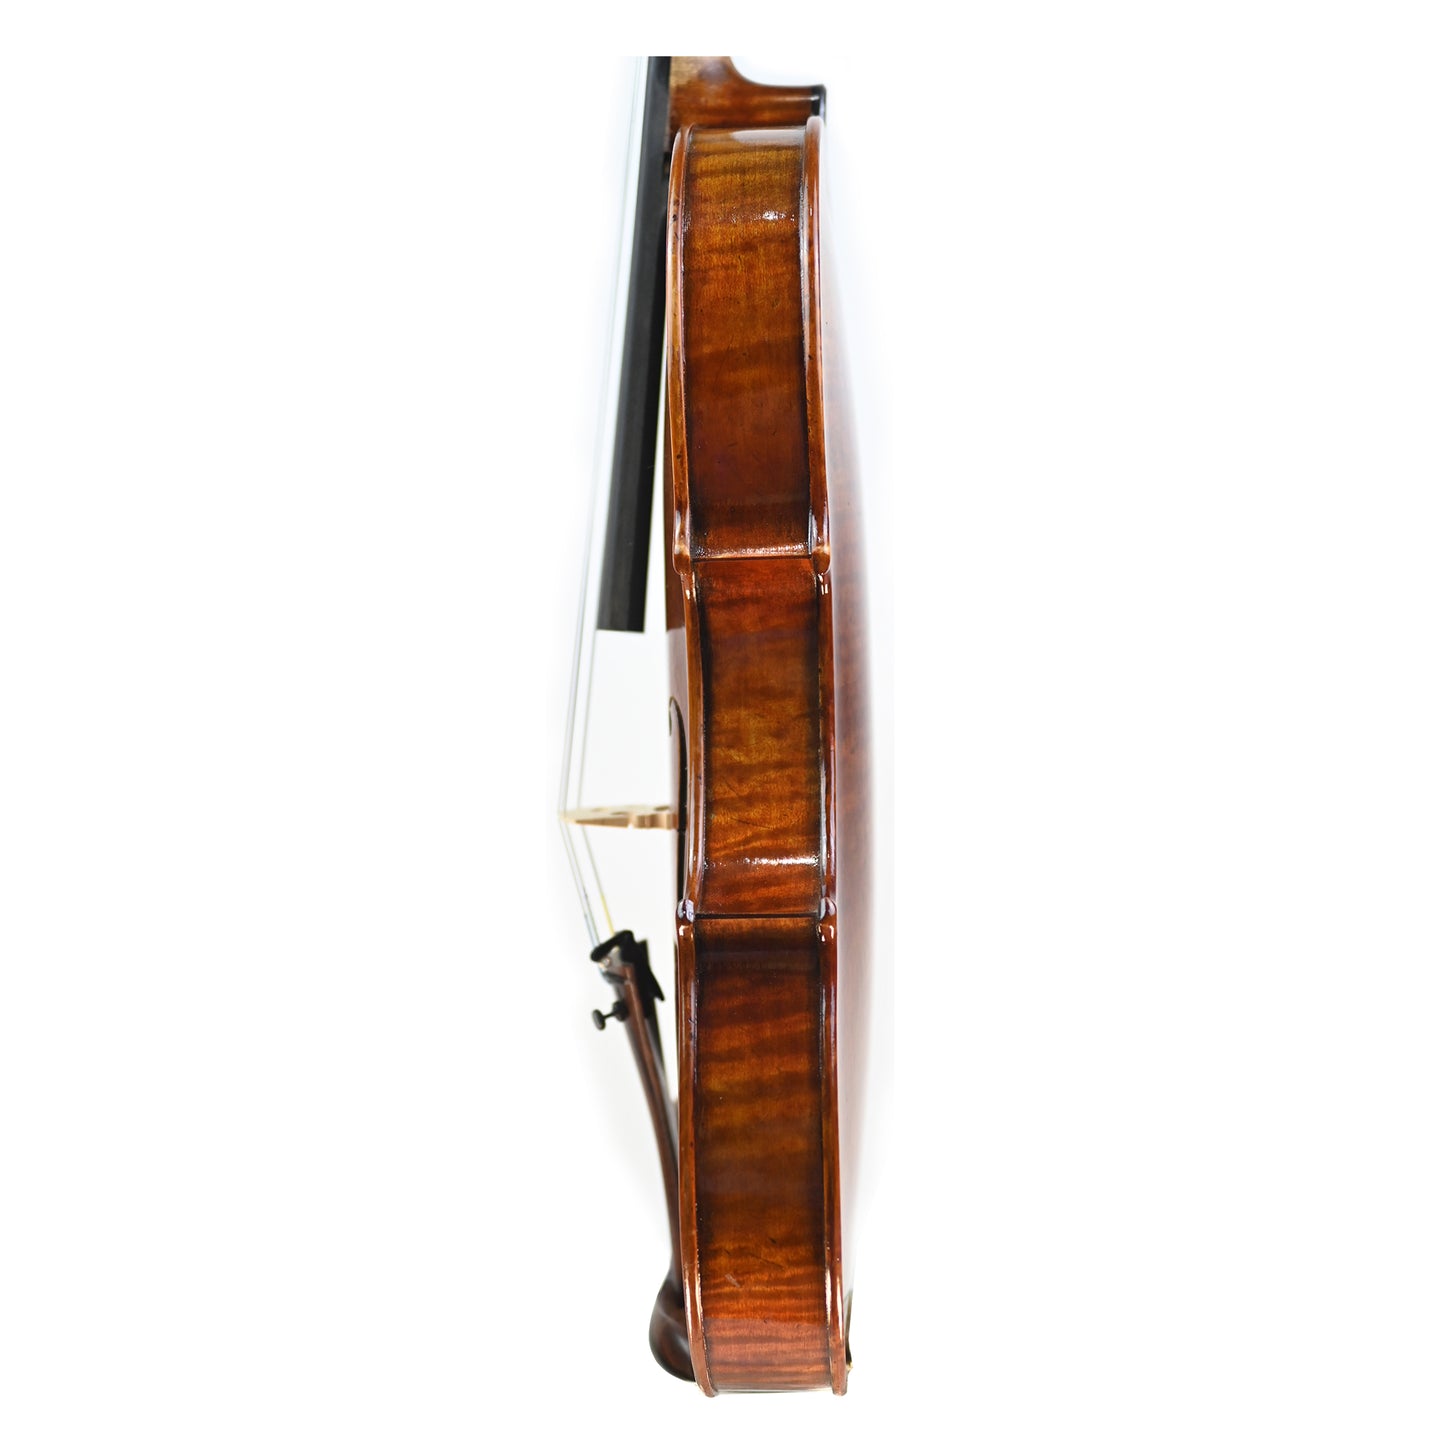 7002 antique violin left ribs